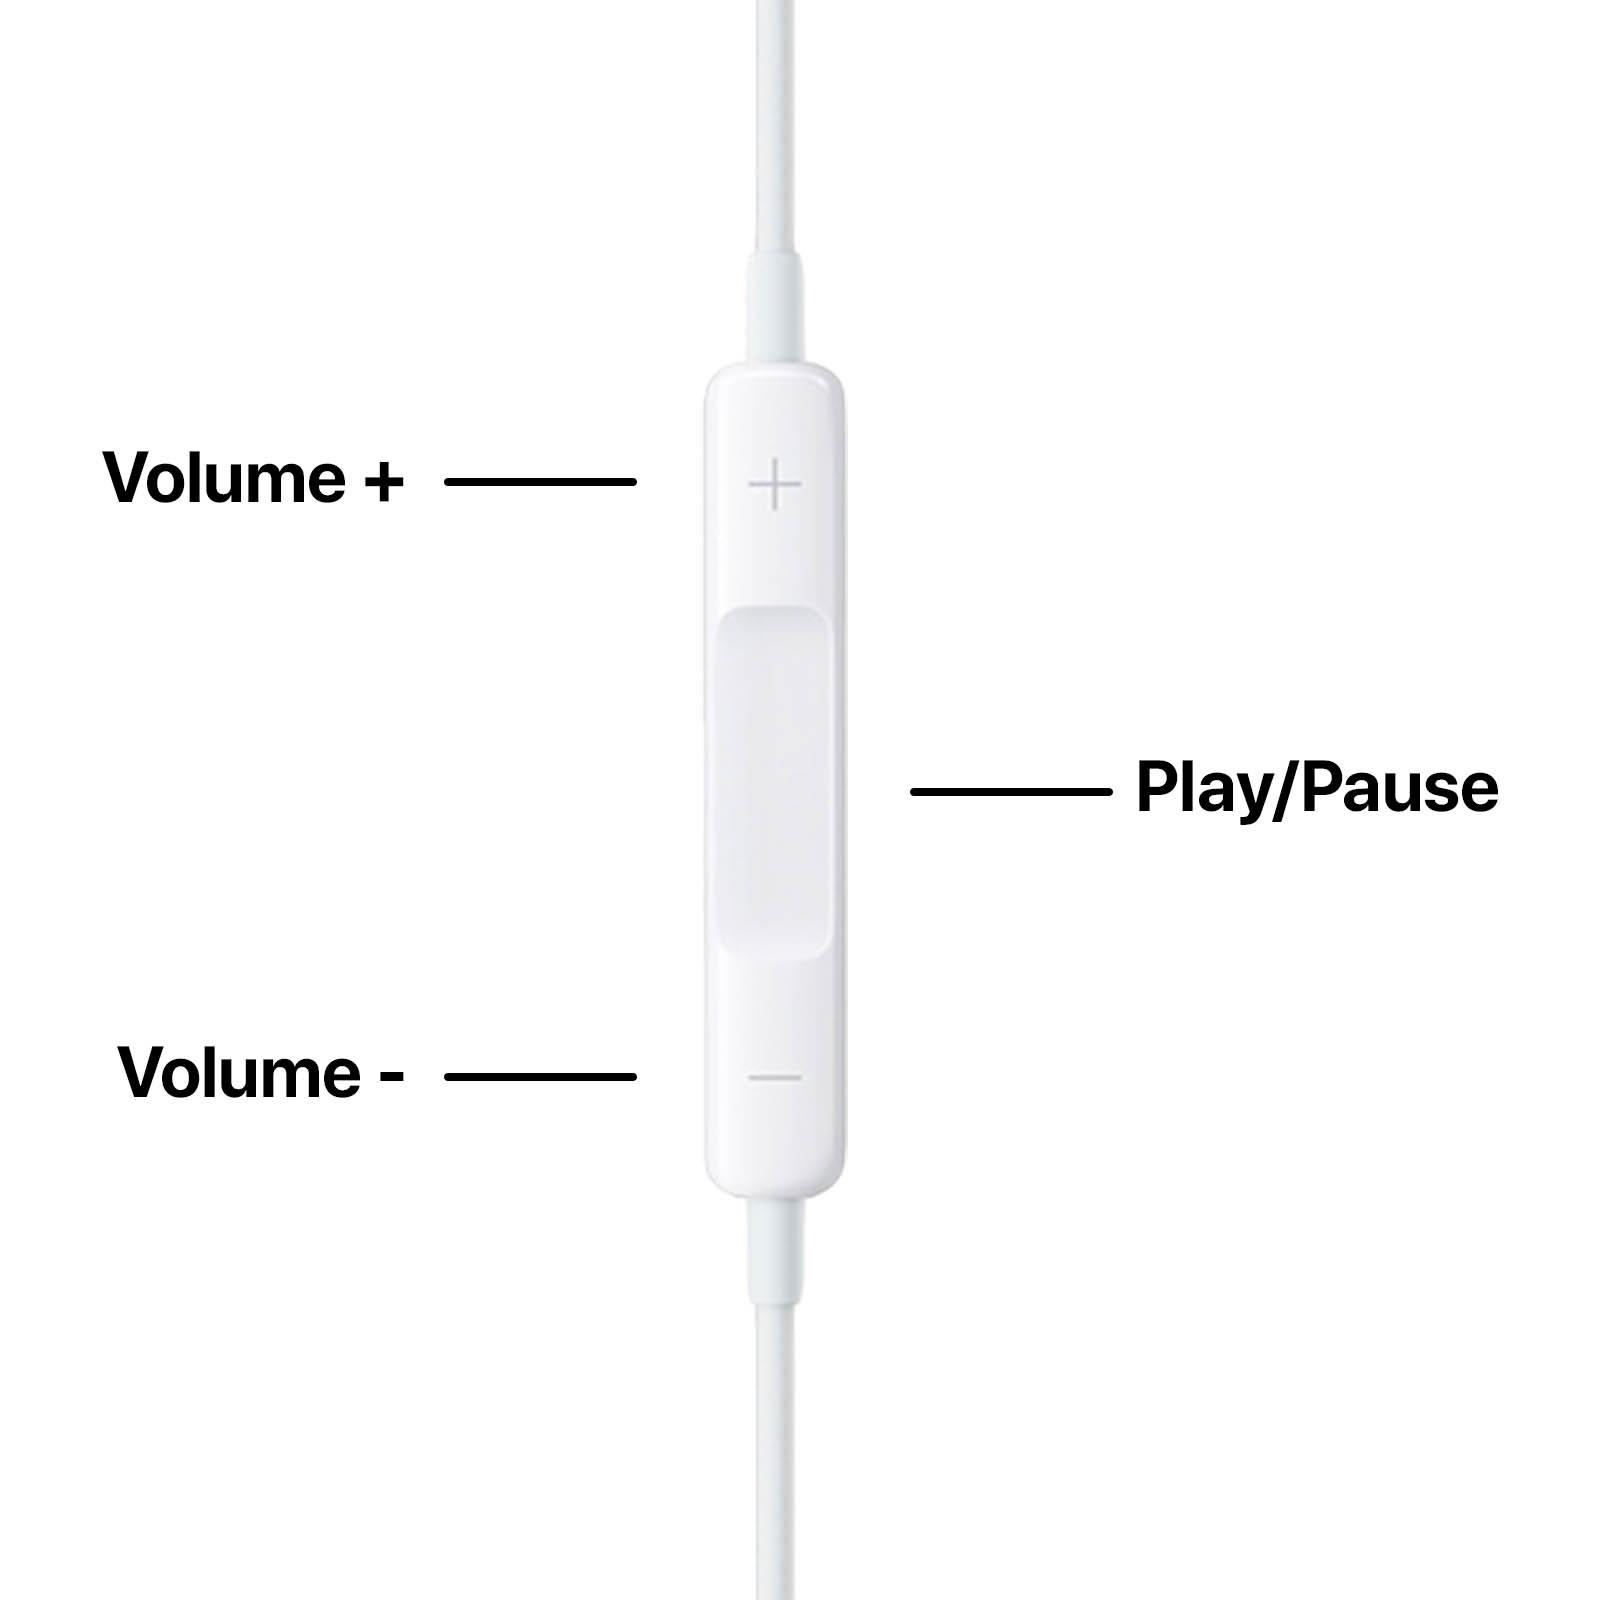 Apple - EarPods - Blanc (A1472) - Écouteur filaire original avec connecteur  Lightning - Ecouteurs intra-auriculaires - Rue du Commerce